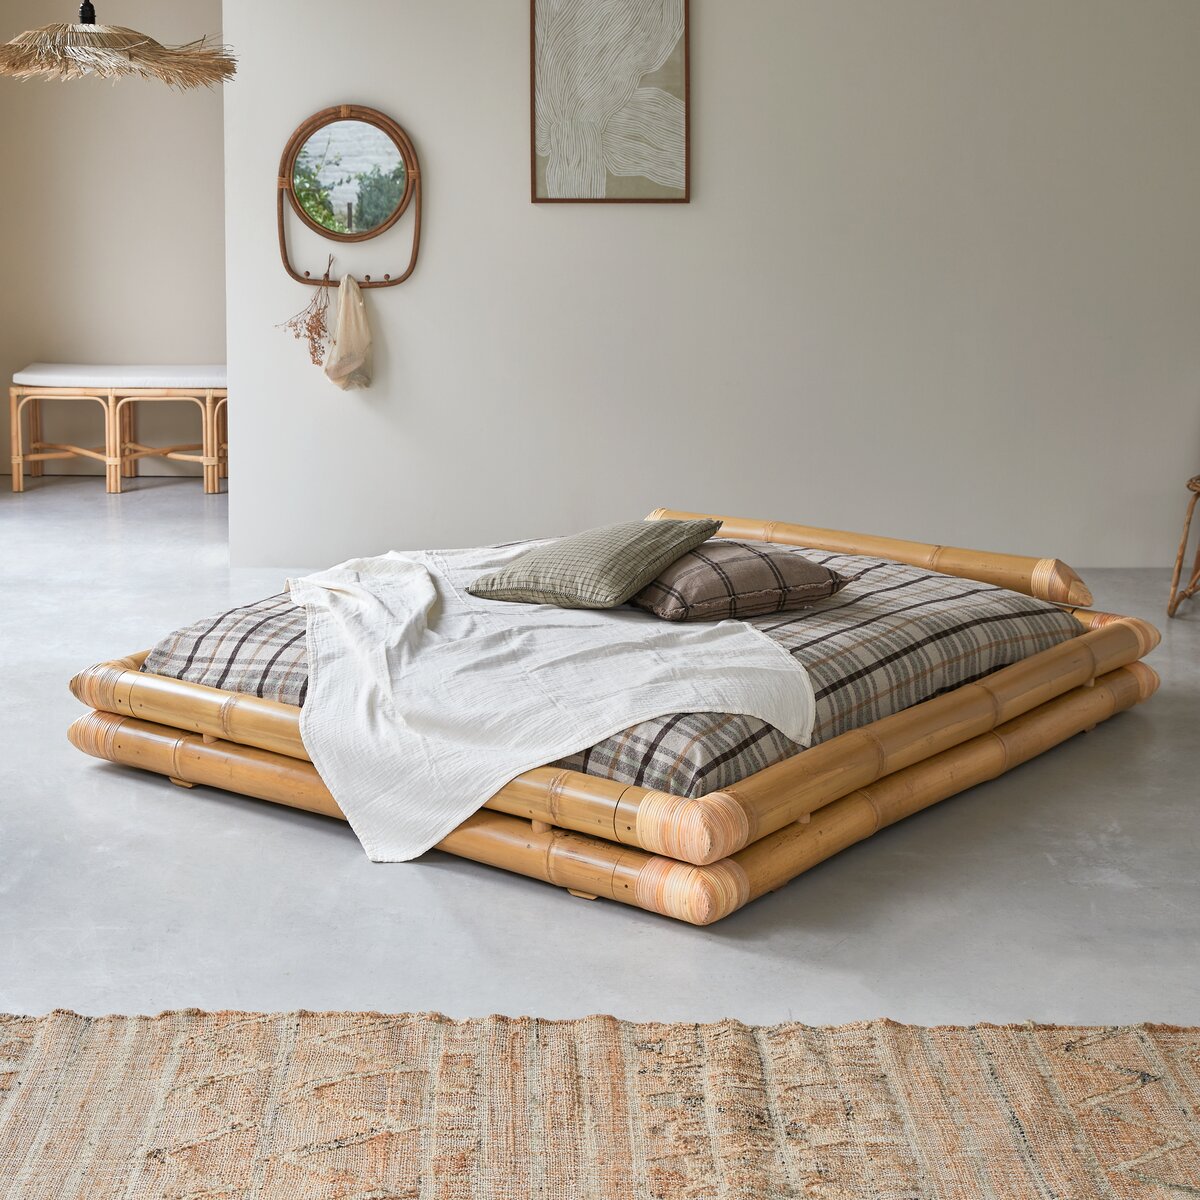 Cama futón en bambú 160x200 cm - Dormitorio / Camas y cabeceros